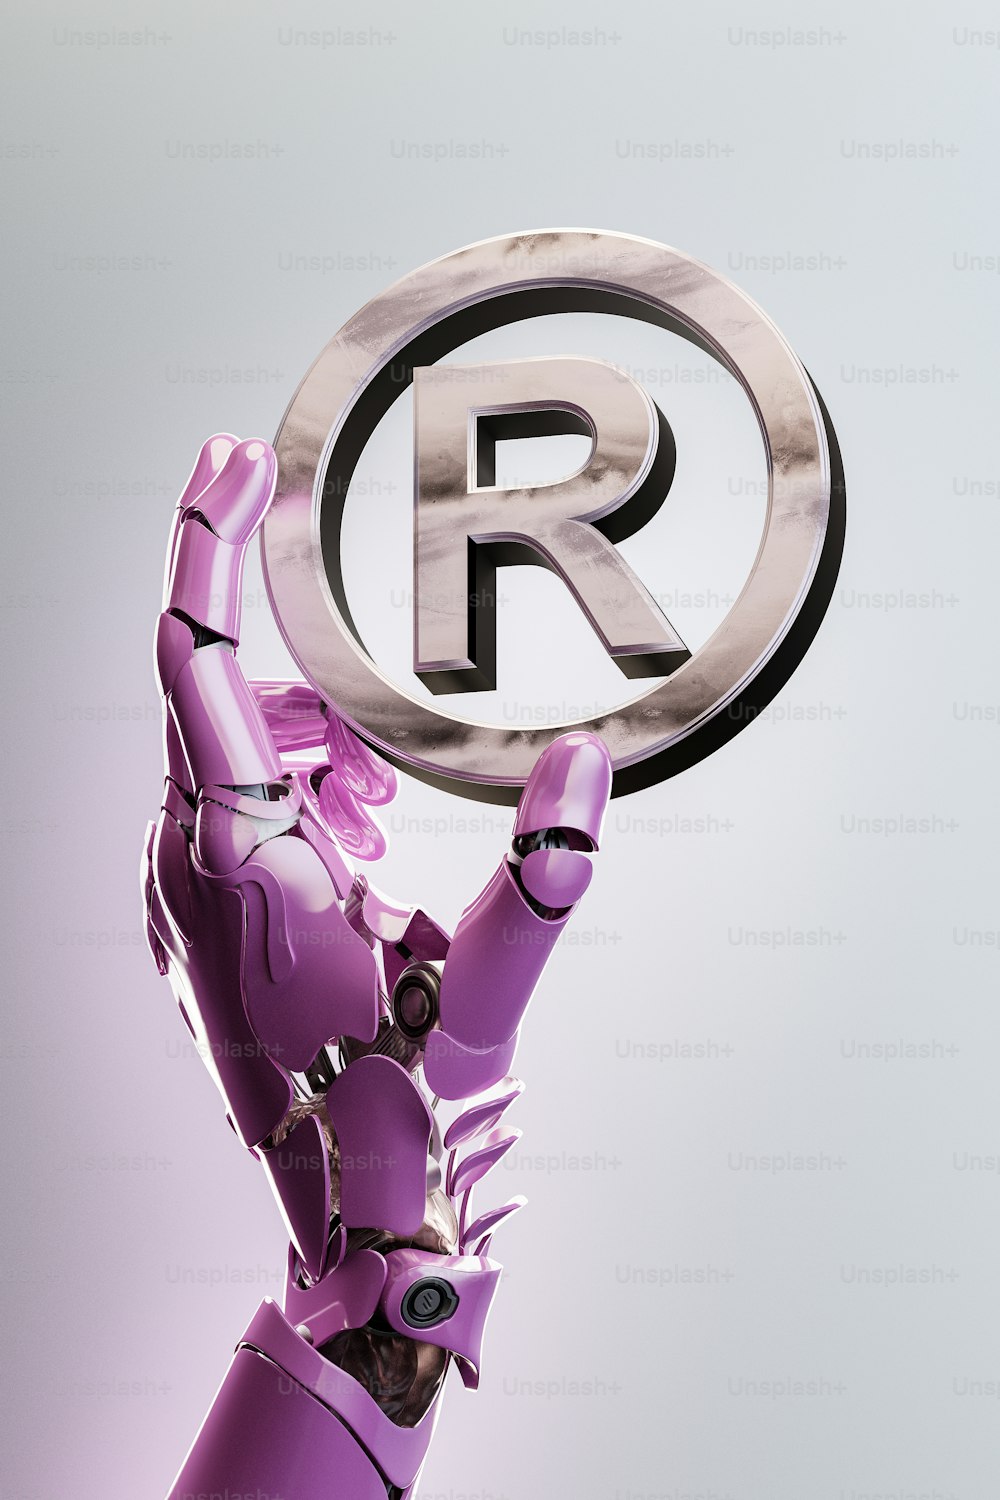 Un robot tenant une pancarte avec la lettre R dessus